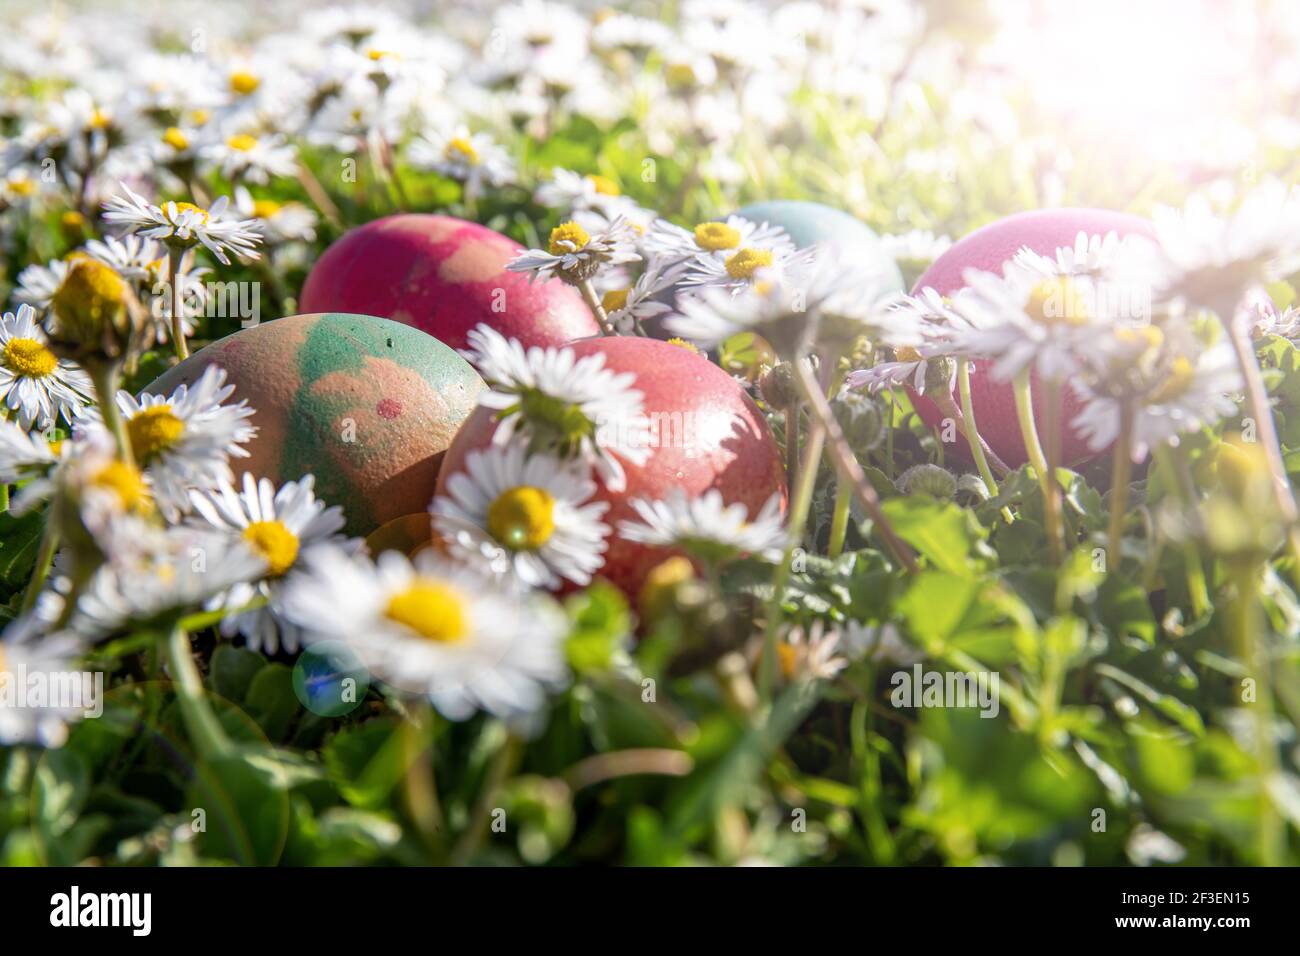 Gefärbte Eier zwischen den Gänseblümchen in einem Garten. Der Preis der Ostertrasure Jagd! Stockfoto